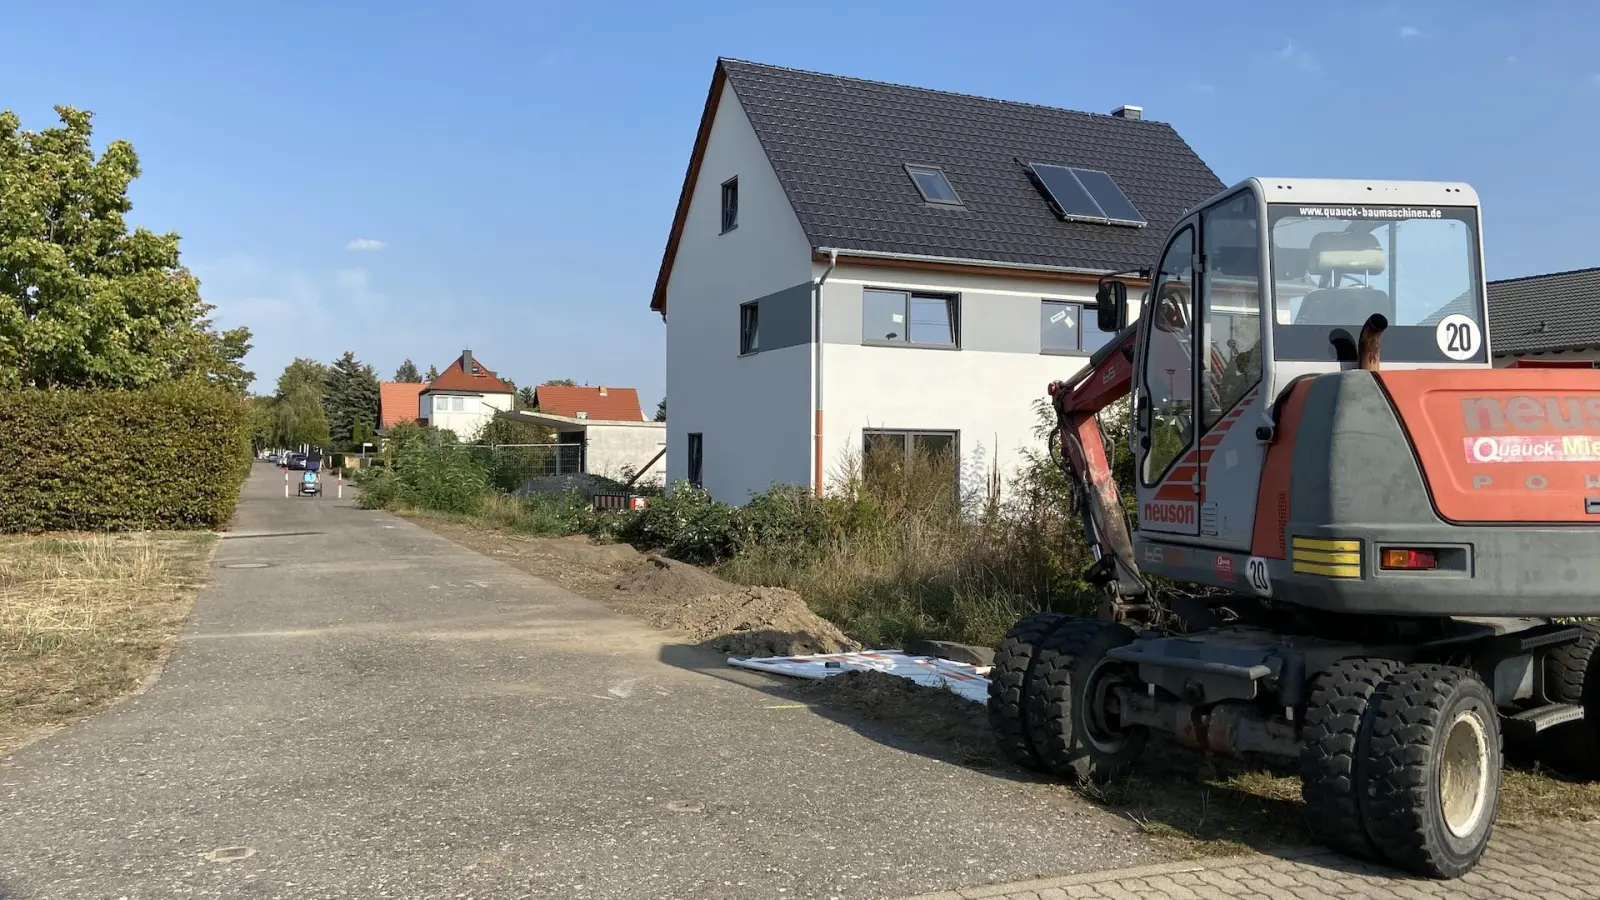 Bauarbeiten und fehlende Poller an der Klebendorfer verunsichern Anwohner (Foto: taucha-kompakt.de)